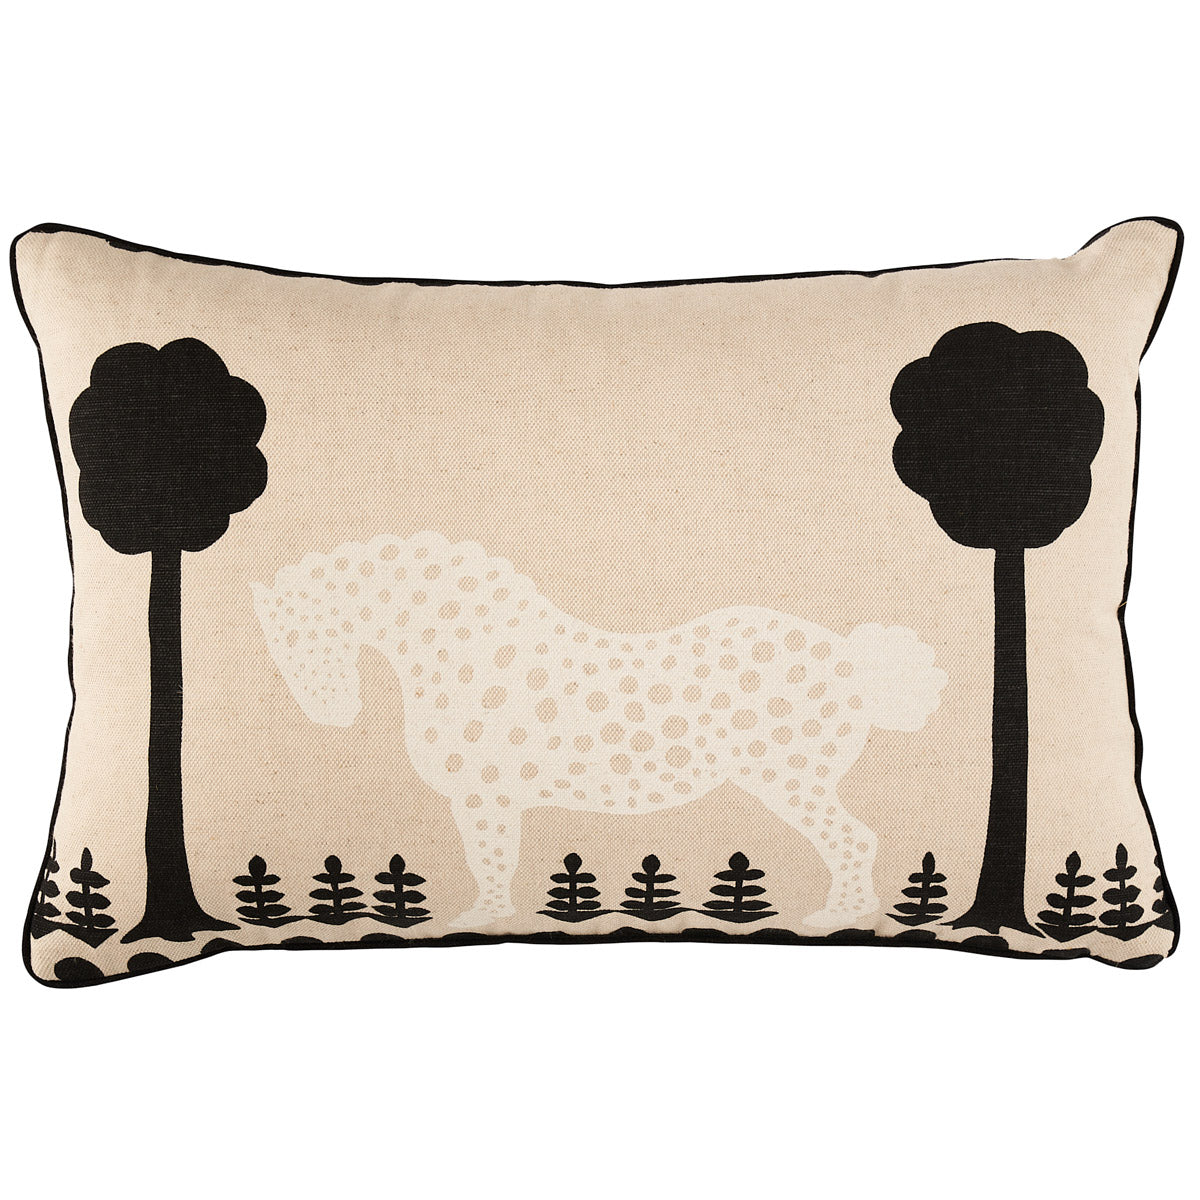 Polka Dot Pony Pillow - Natural